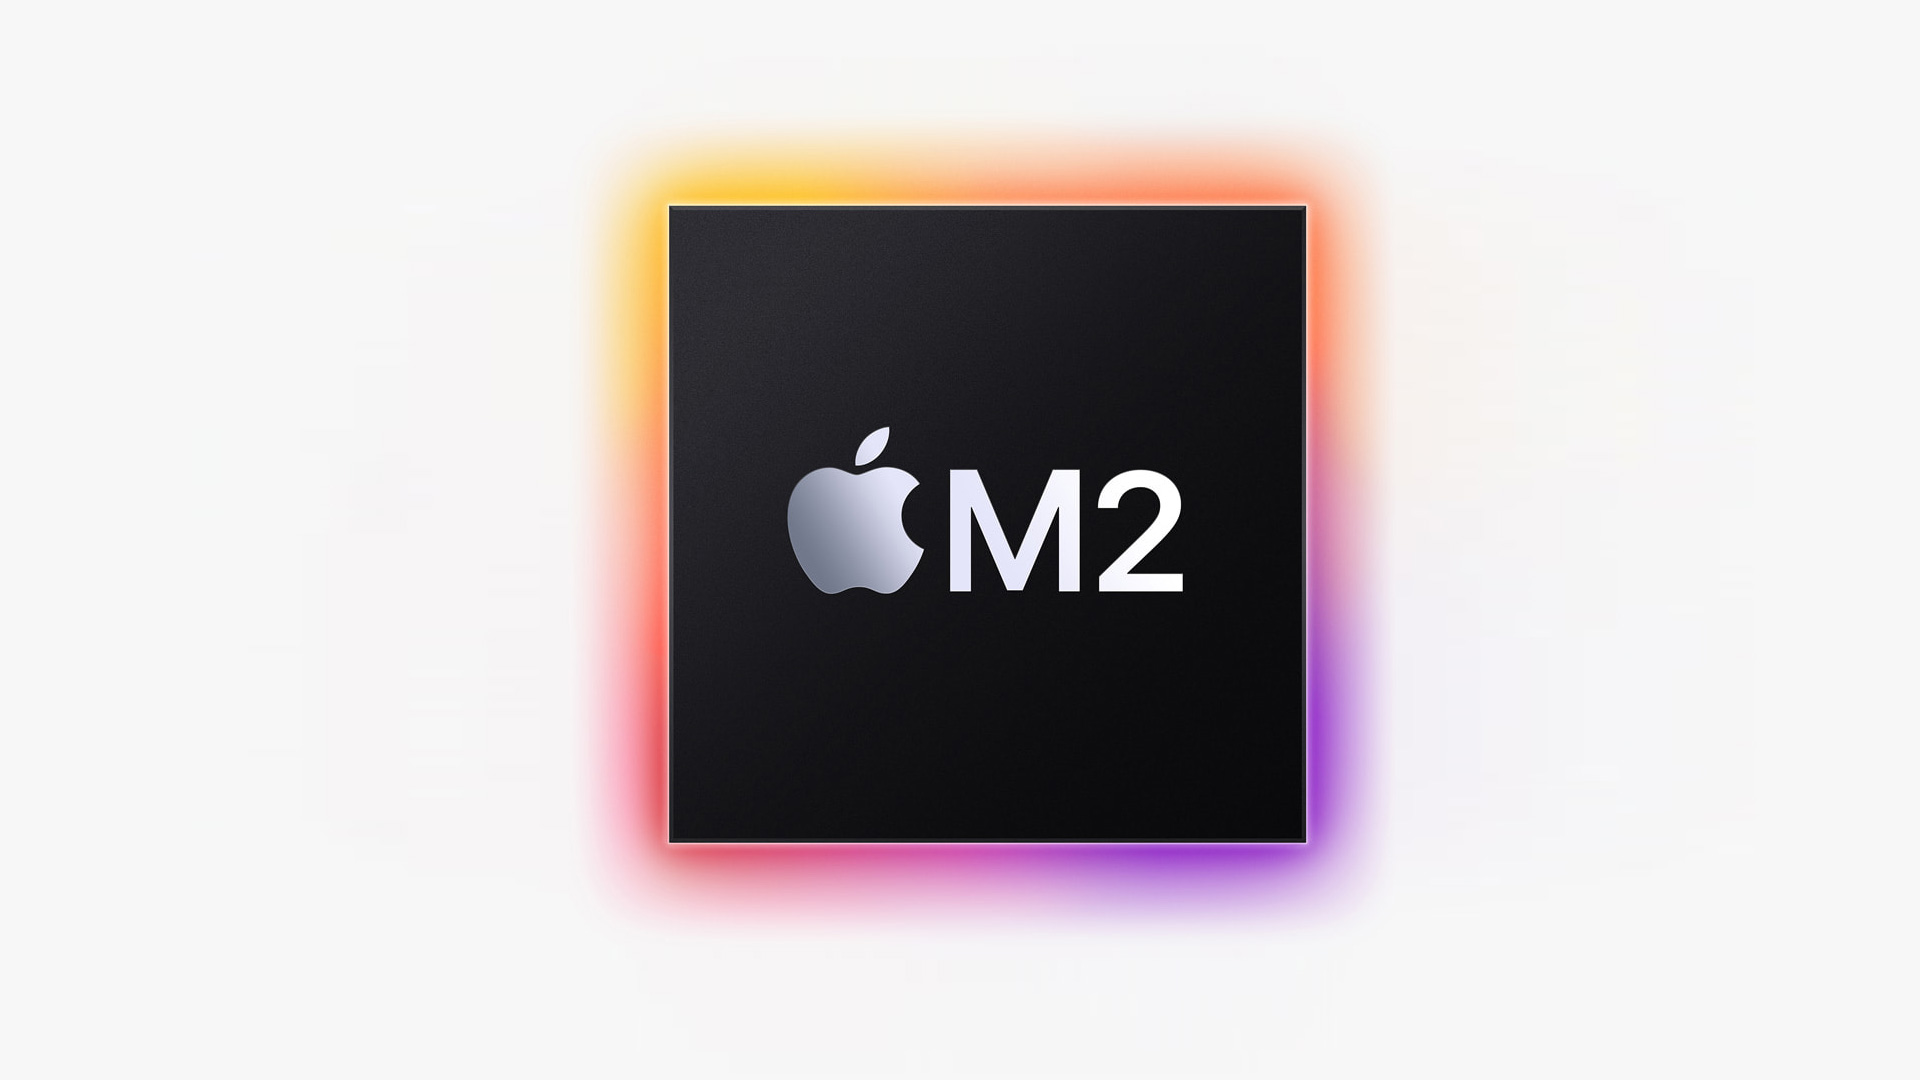 Le nouveau processeur phare d’Apple M2 est dévoilé à la WWDC